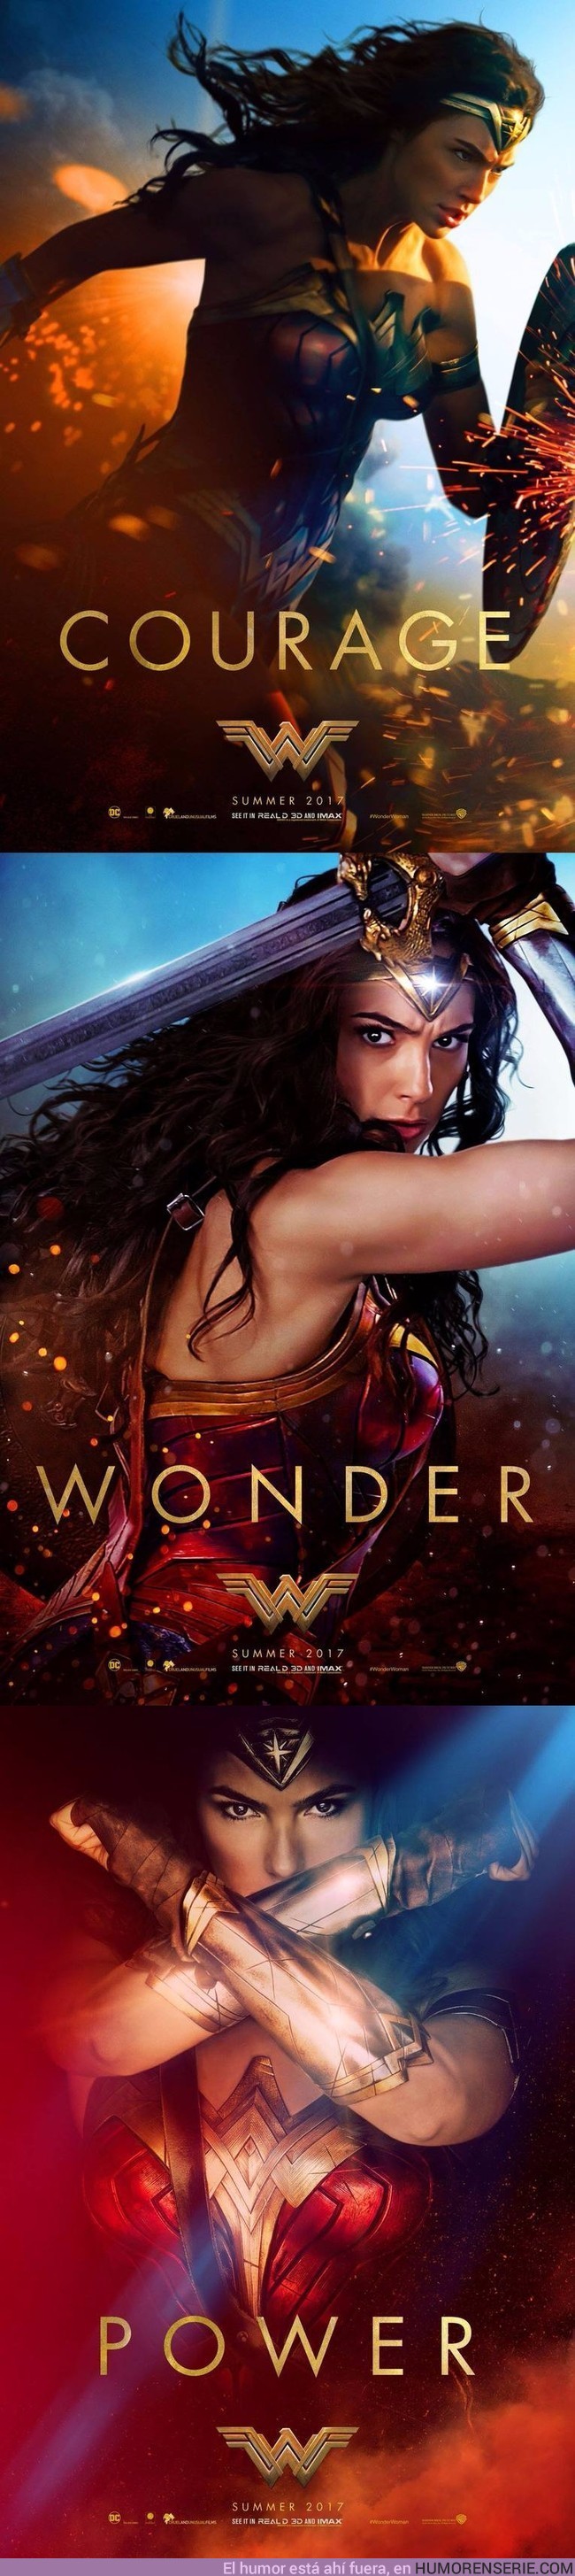 6879 - Nuevos posters de Wonder Woman